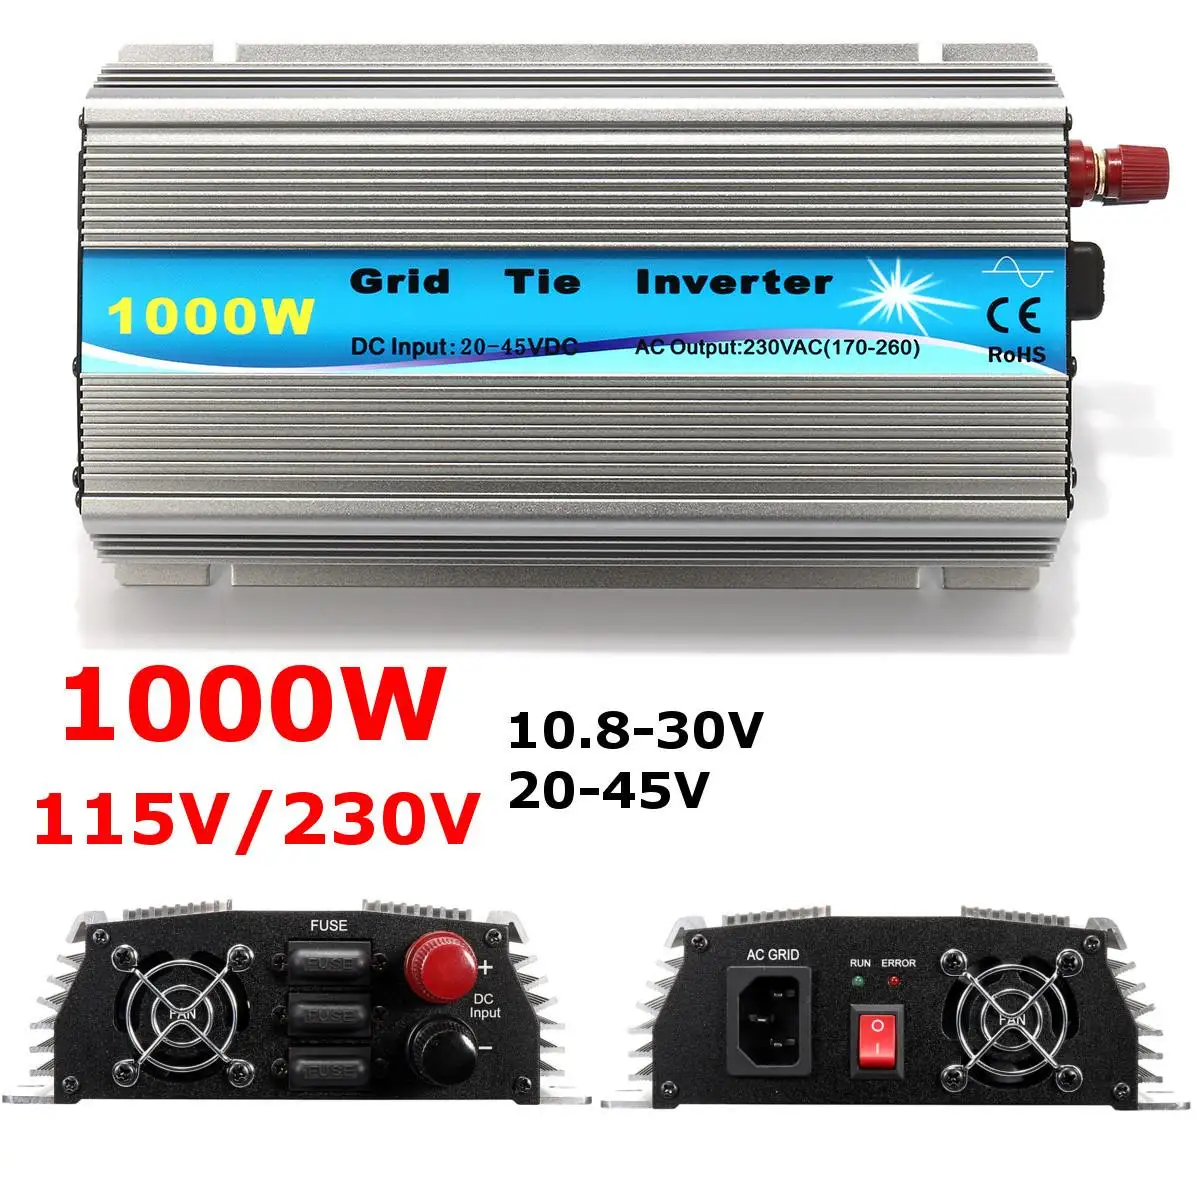 

1000W 30V/36V Grid Tie Inverter MPPT Function Pure Sine Wave 110V Or 230V Output 60 72 CELLS Panel Input On Grid Tie Inverter